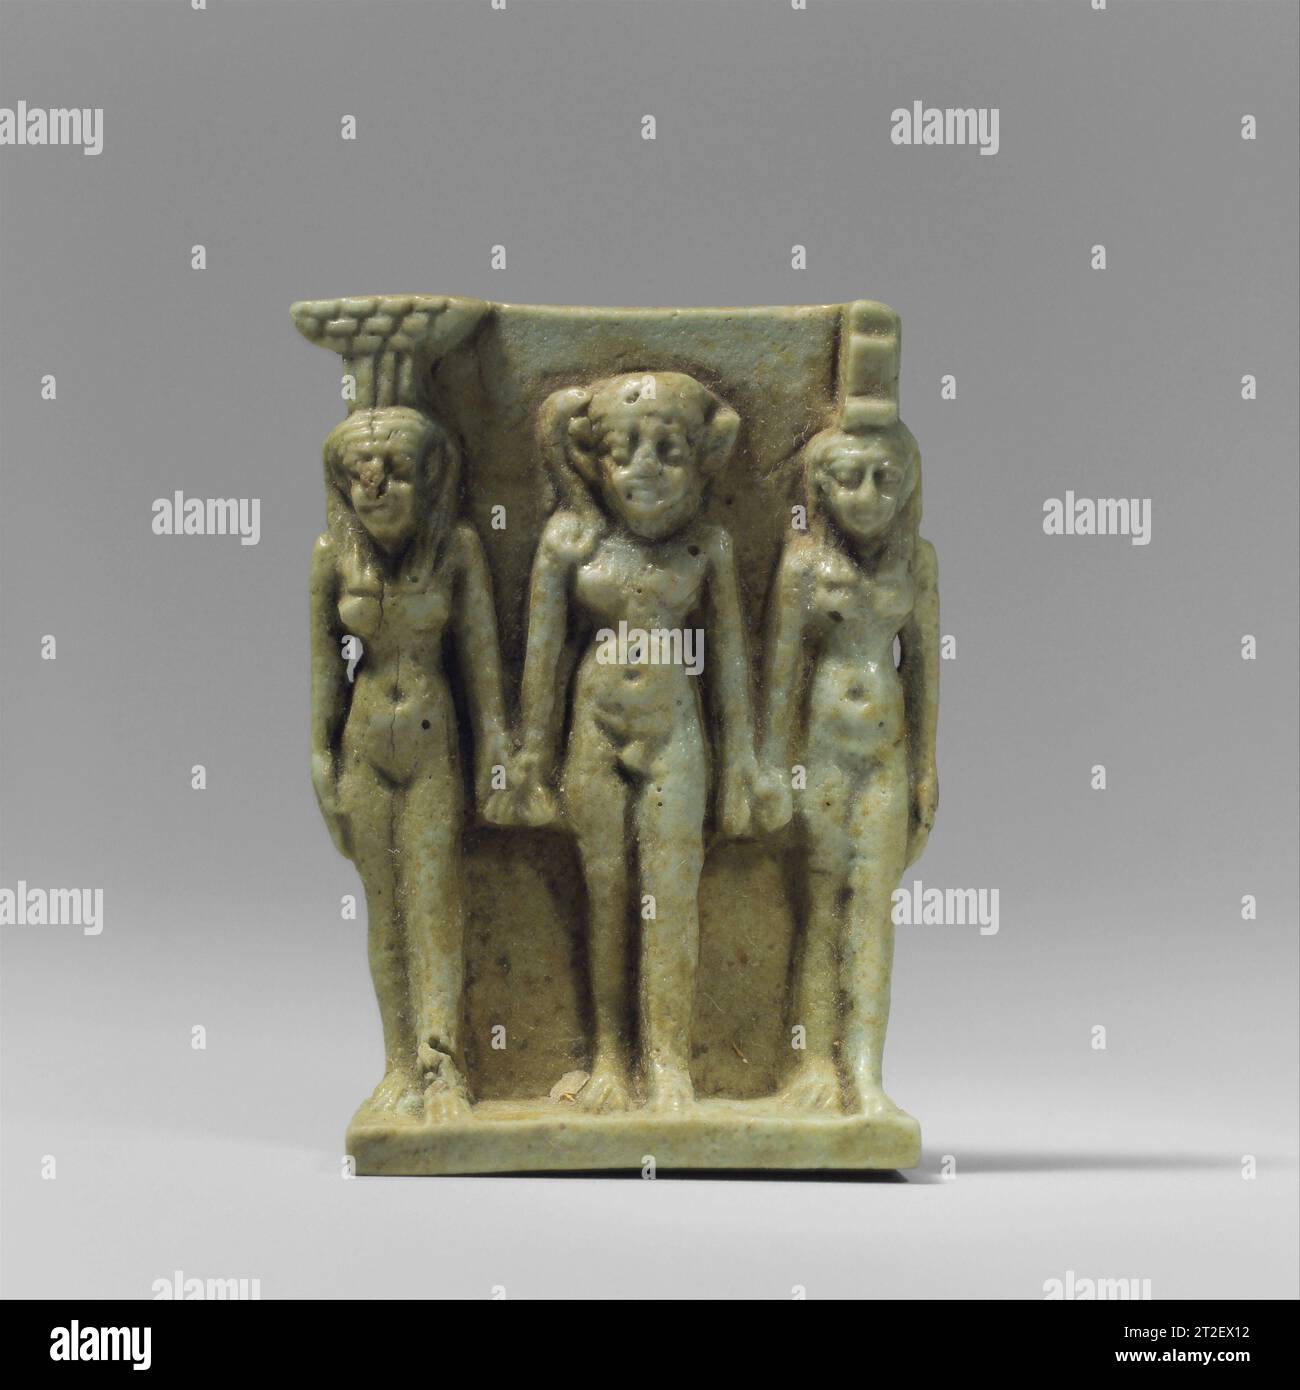 Nephthys, Horus und Isis Amulett späte Periode, Saite 664–525 v. Chr. die drei Gottheiten, die in diesem Triaden Amulett dargestellt werden, sind einige der Hauptdarsteller des Osiride-Mythos, der den Mord und die Wiederbelebung des Gottes Osiris und die Geburt und triumphale Rache seines Sohnes Horus erzählt. Nach diesem Mythos kümmerten sich die Schwesterngöttin Isis und Nepthys um den Körper des Osiris und beschützten später seinen Sohn Horus als kleines Kind. Horus ist hier im Zentrum der Gruppe, flankiert von seiner Mutter Isis links und seiner Tante Nephthys rechts. ISIS wird durch die gestufte Thronhierarchie auf ihrem Kopf identifiziert Stockfoto